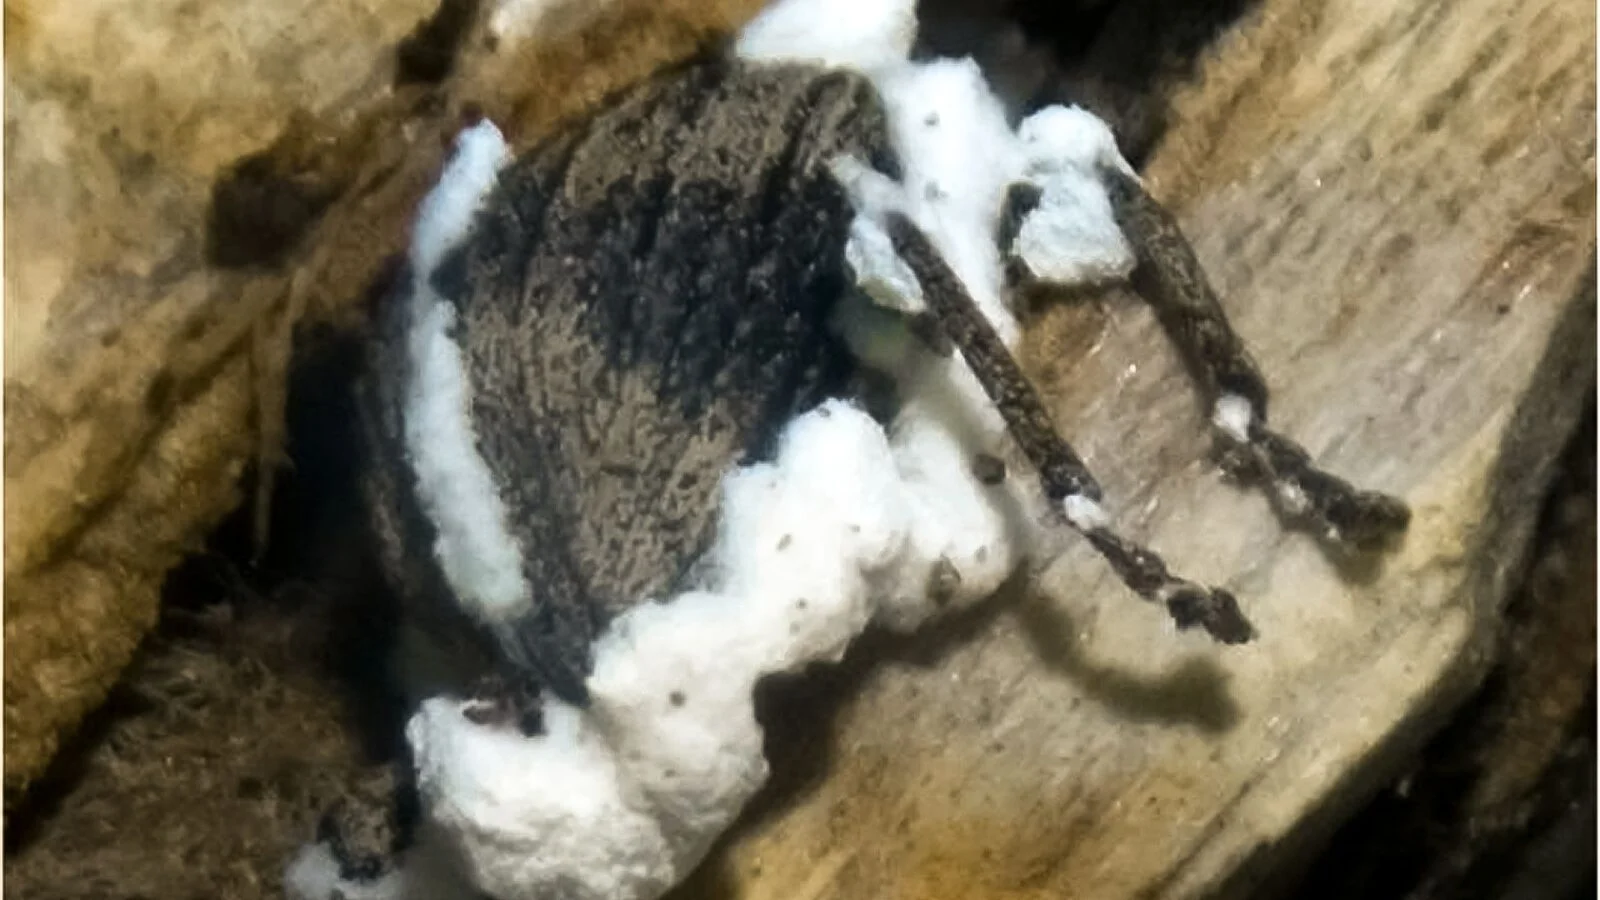 Inseto Sternocoelus sp. infectado pelo fungo entomopatogênico Beauveria bassiana